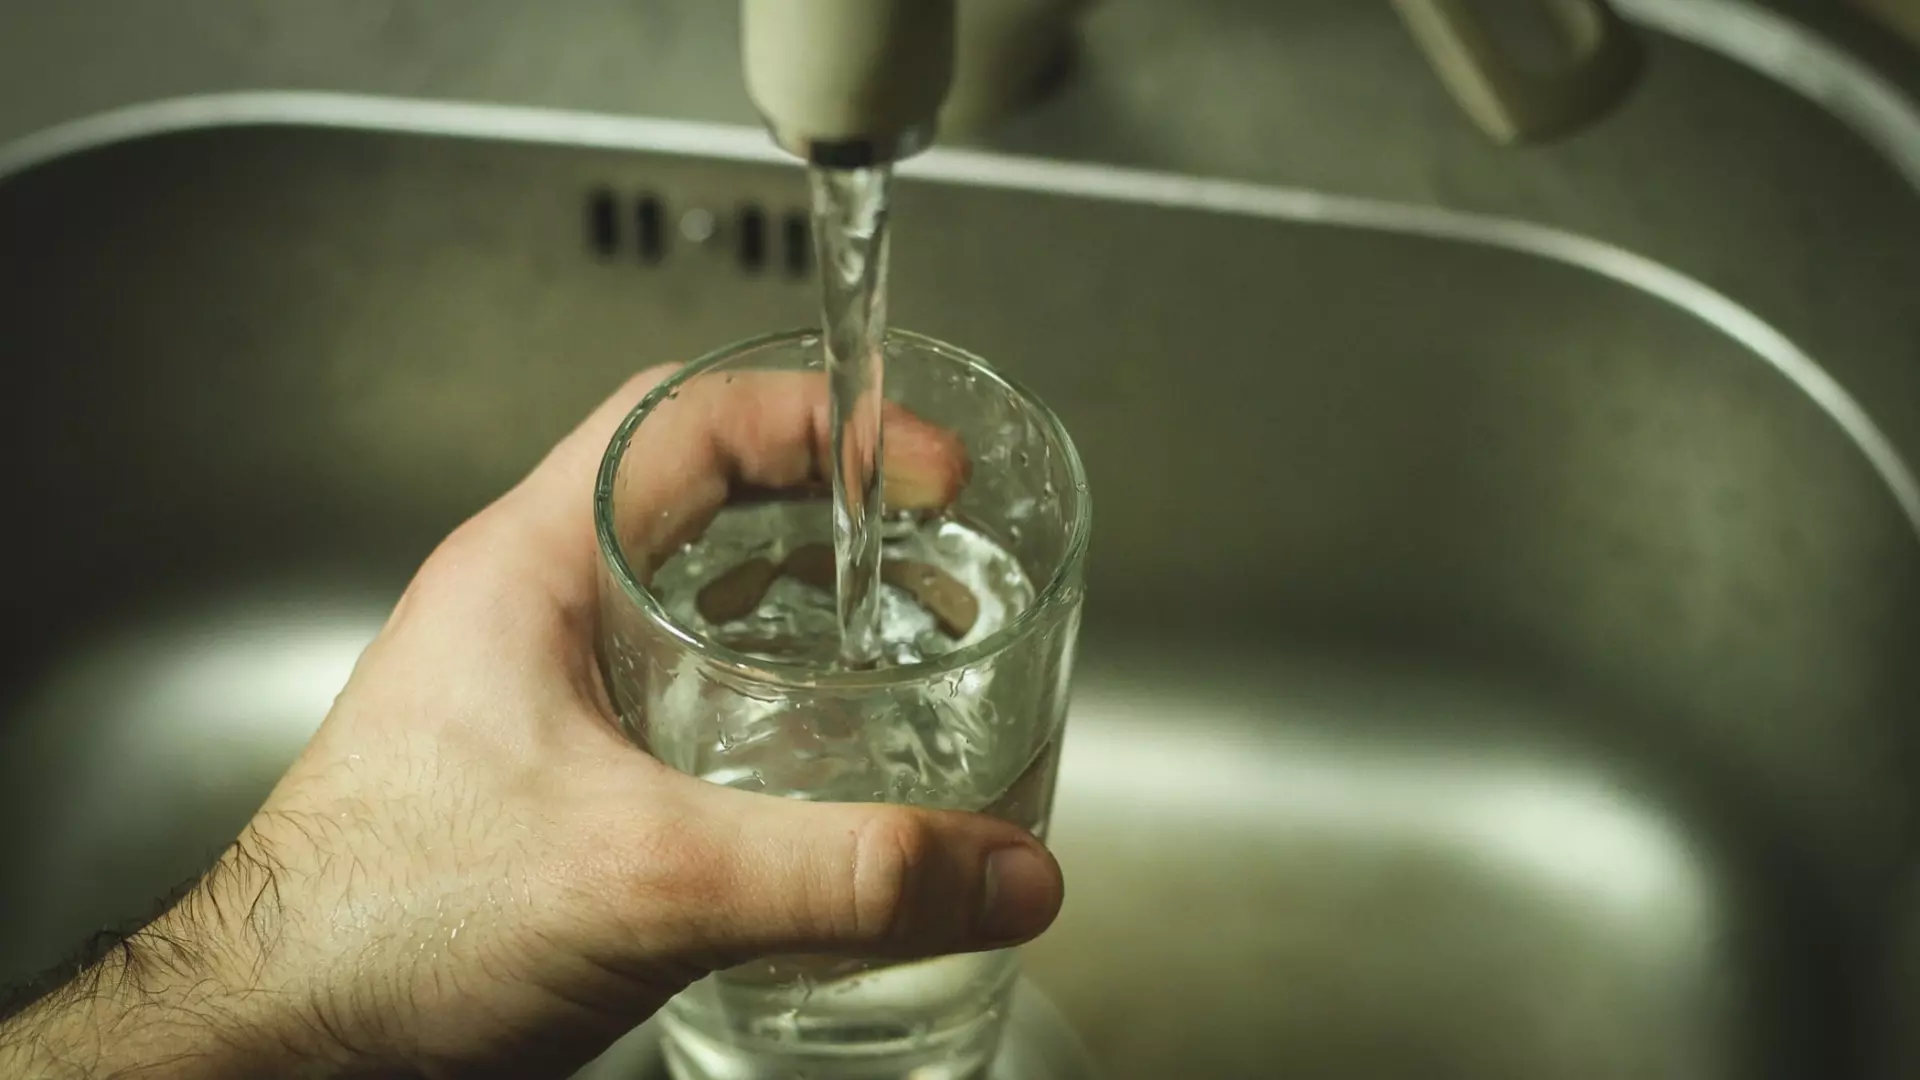 13 санаториев в Железноводске останутся без воды на сутки из-за крупной аварии